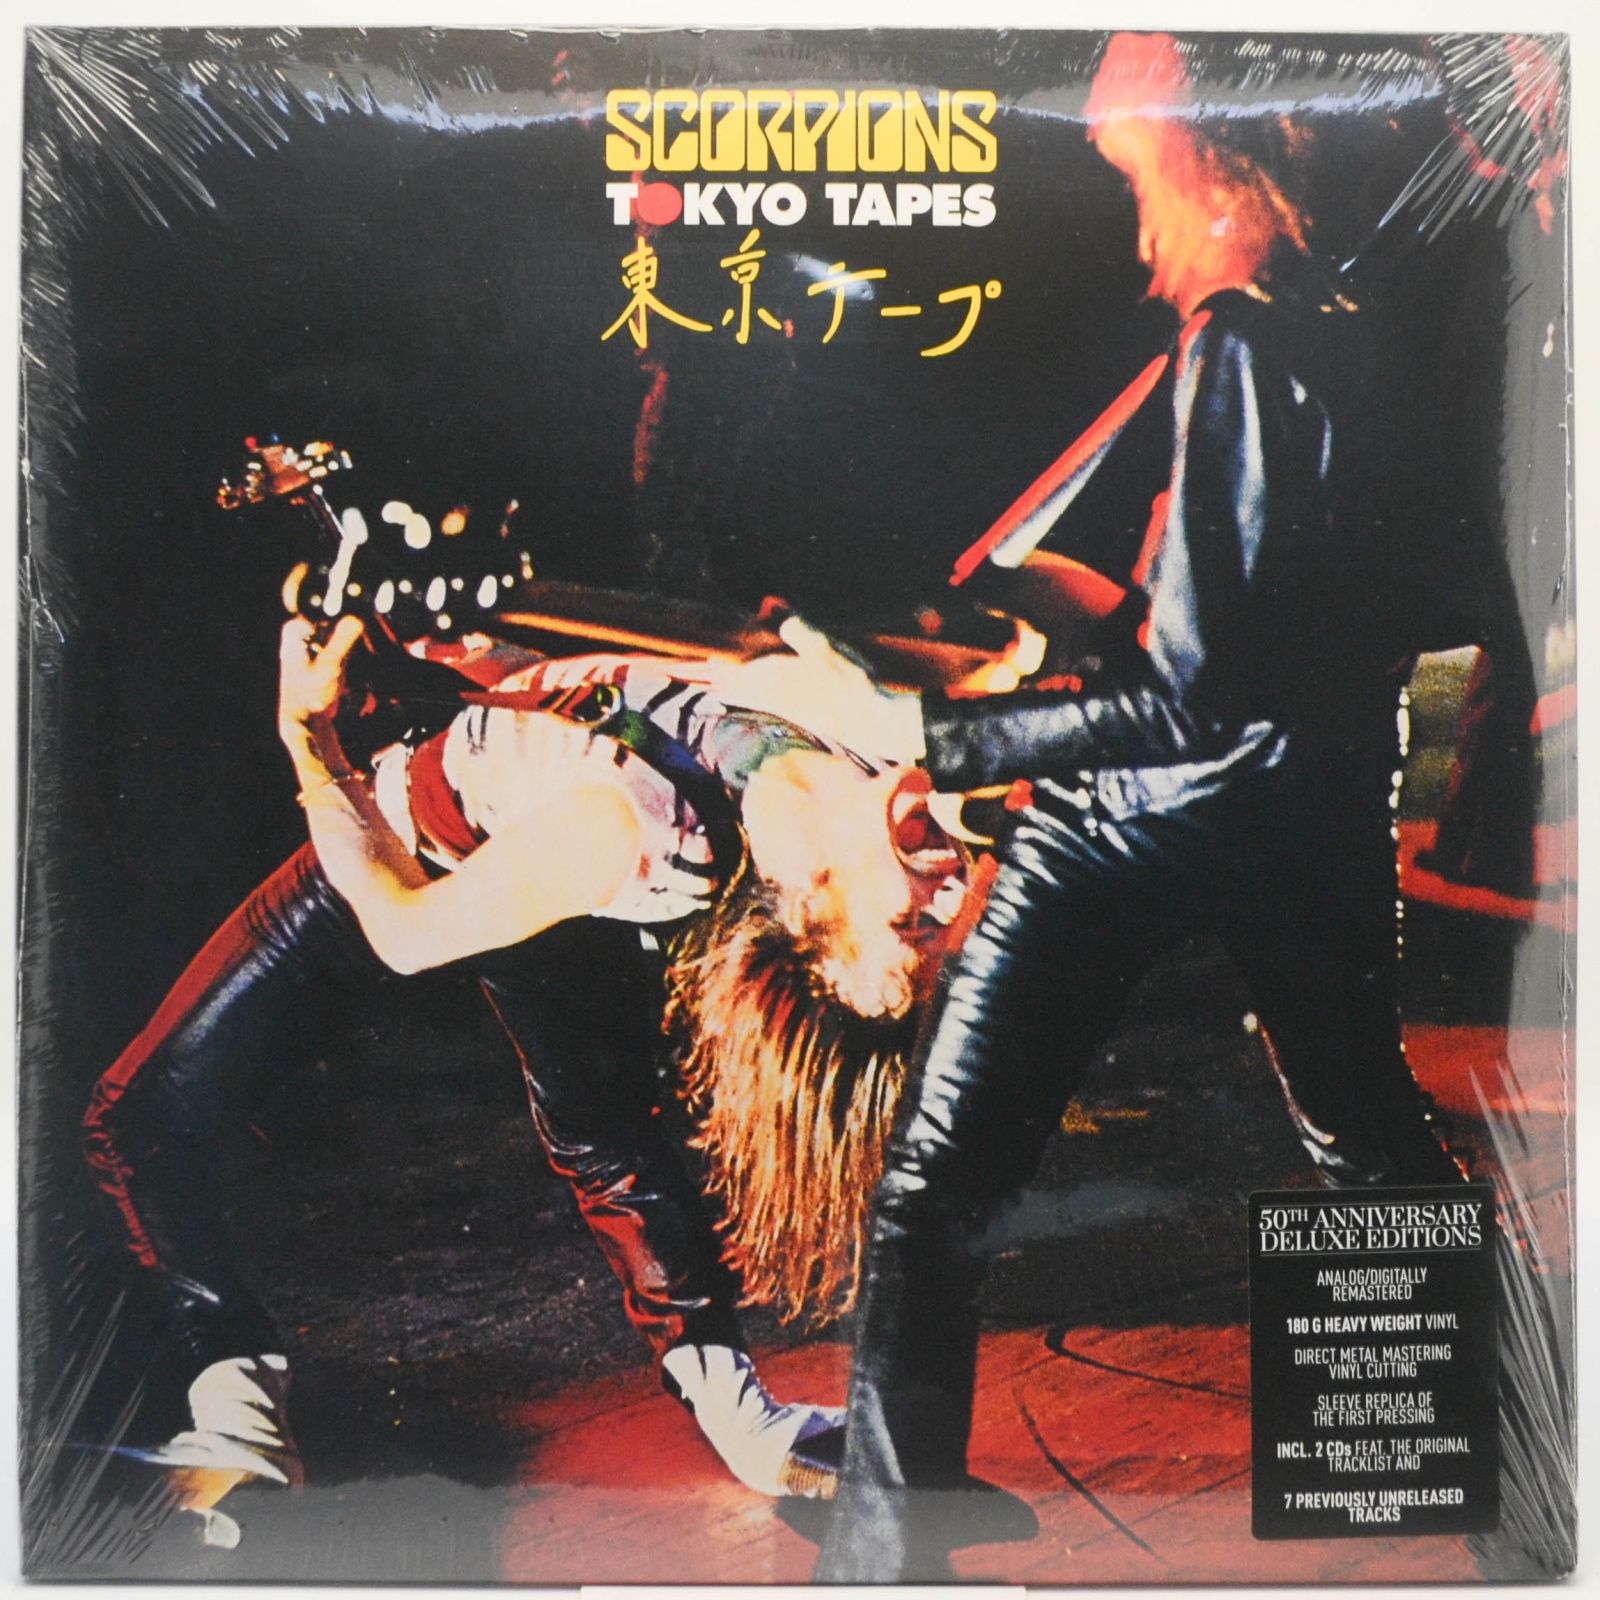 Scorpions — Tokyo Tapes (2LP+2CD), 1978